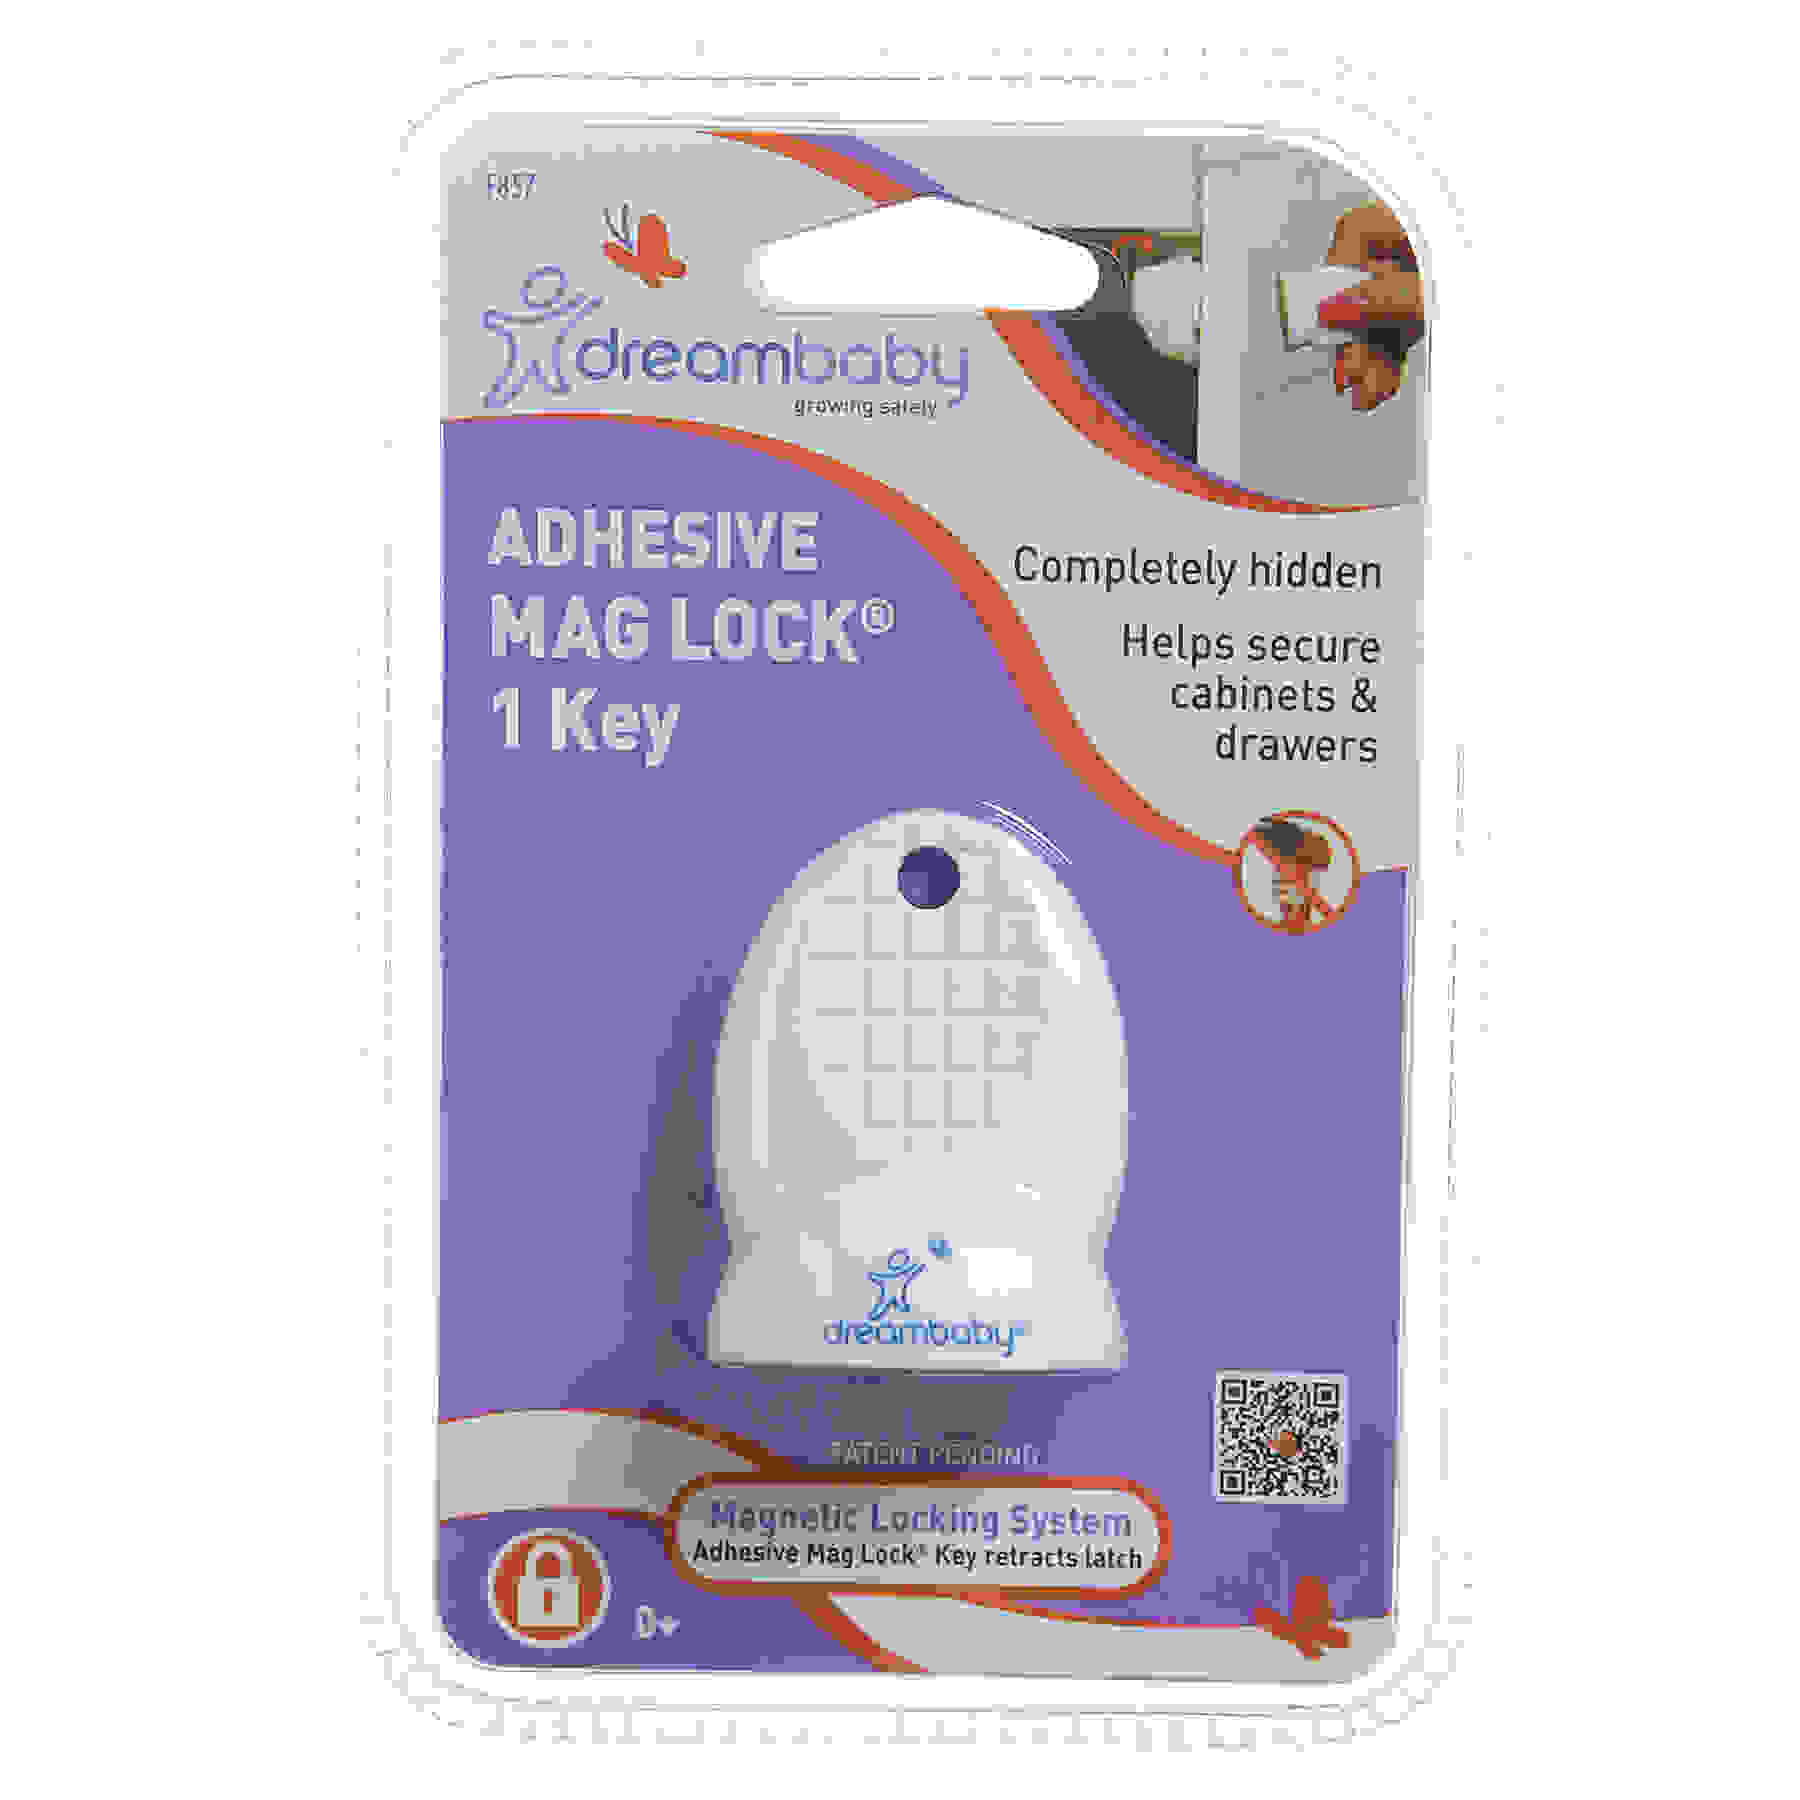 Adhesive Mag Lock Key, Pack of 1